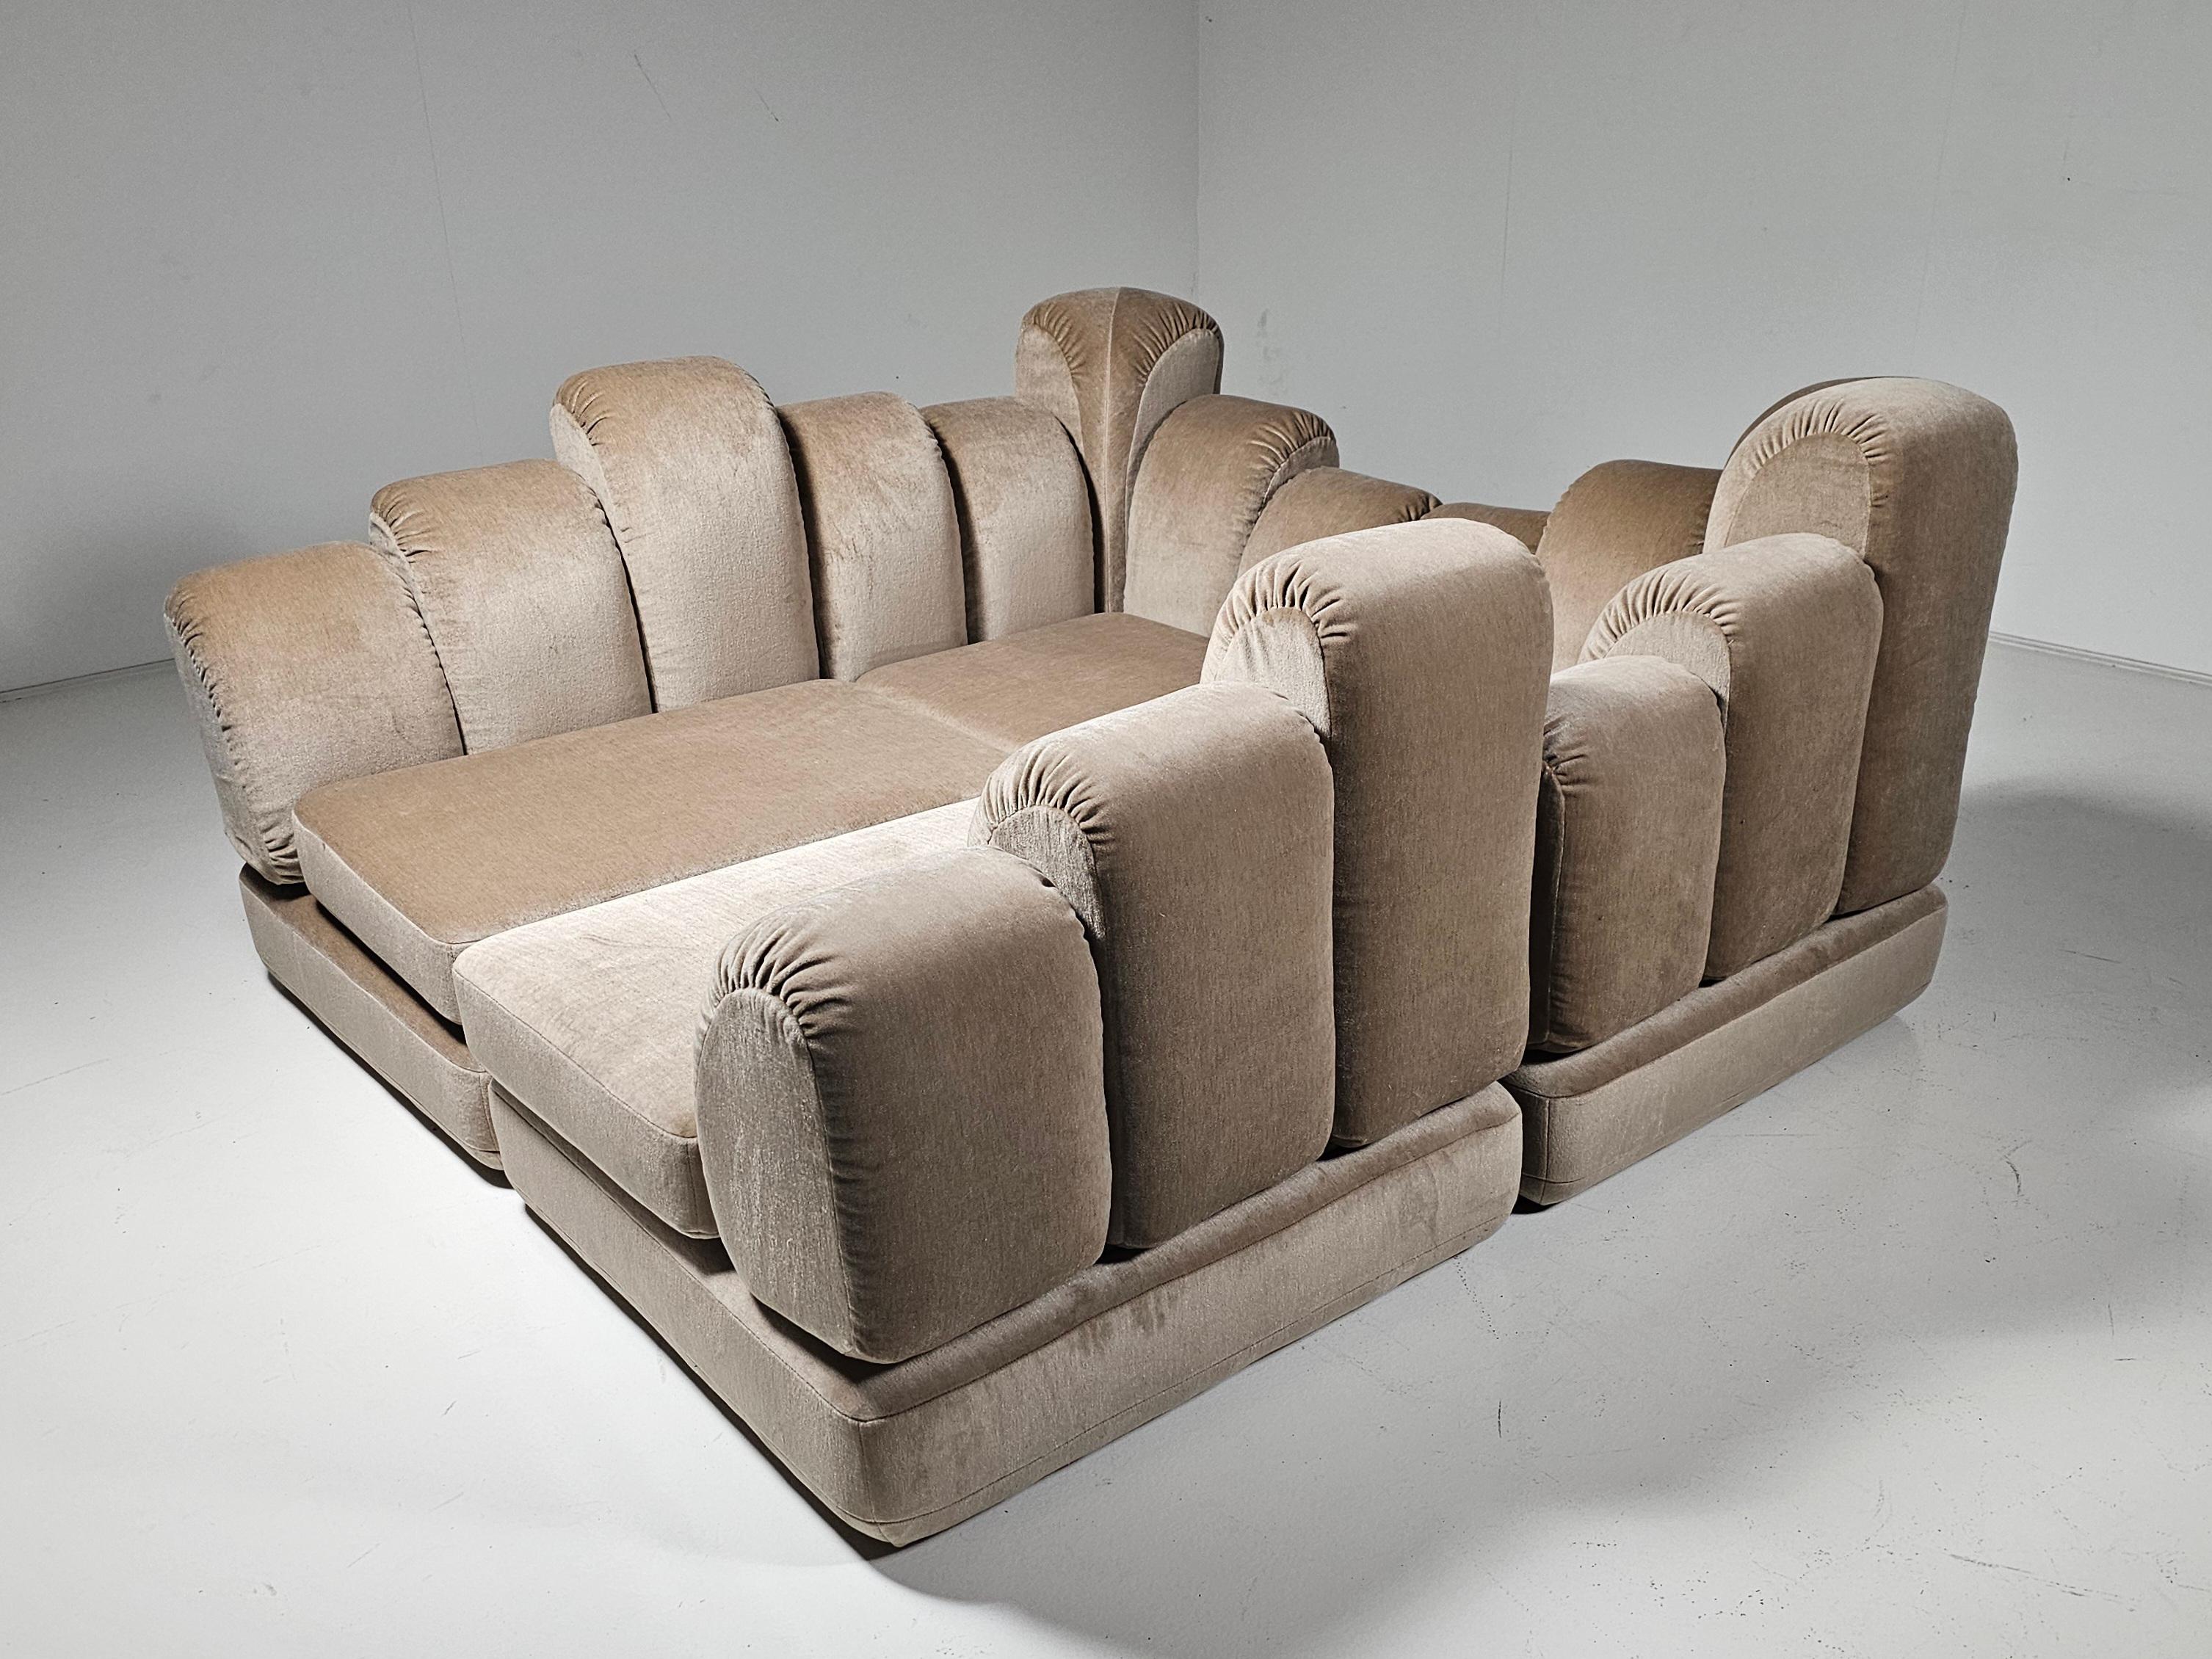 Hans Hopfer 'Dromadaire' Sectional Sofa in beige mohair velvet, Roche Bobois For Sale 1